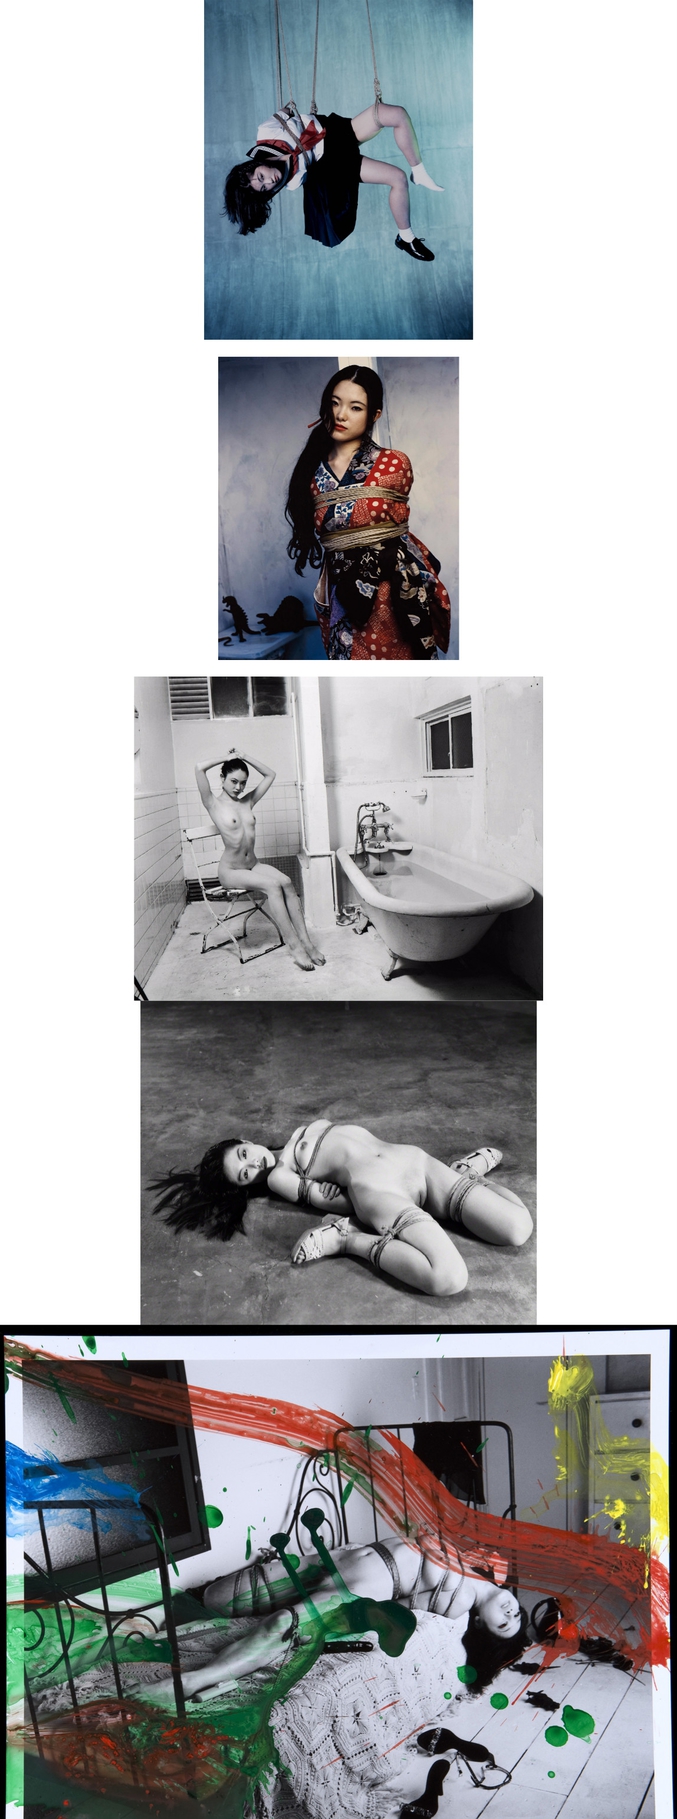 Oeuvres de Nobuyoshi Araki, figure incontournable de la photographie contemporaine japonaise.

Araki est célèbre pour ses photographies de femmes ligotées selon le Kinbaku, l'art du bondage japonais qui existe depuis le XVème siècle. Mais pas seulement : il a aussi beaucoup photographié l'envers du décor de la capitale japonaise, sous l'angle de ses deux obsessions - le sexe et la mort.